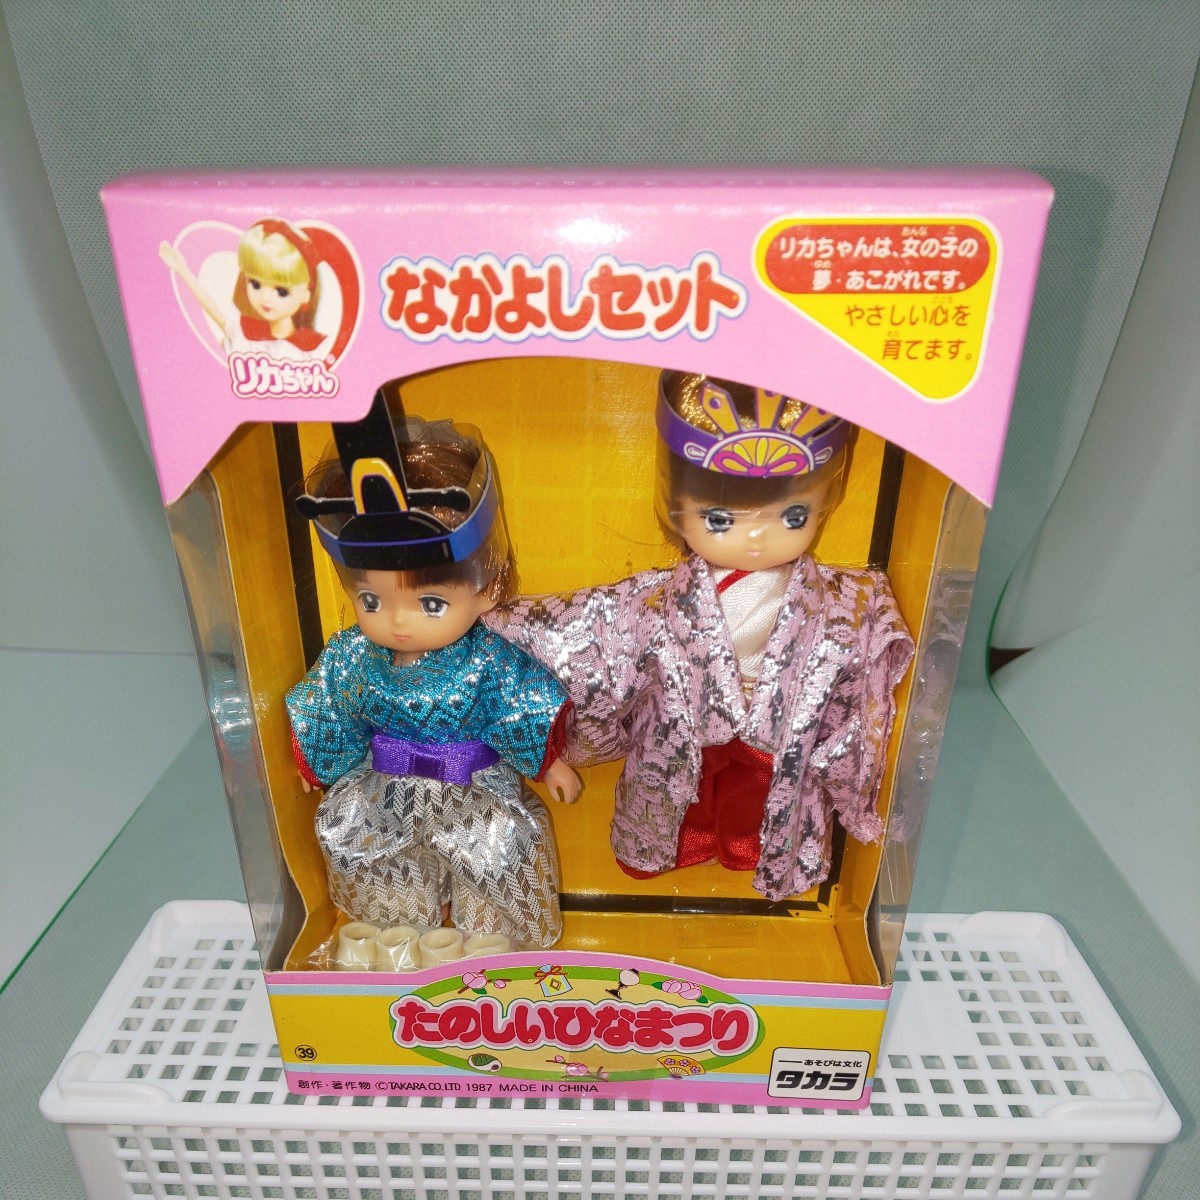 Licca-chan 好運套裝, 趣味女儿节, 未开封, 1987, 农具, 复古雏娃娃, 换装娃娃, 宝, 匿名投递, 第一名, 装扮娃娃, 莉卡酱, 玩具娃娃